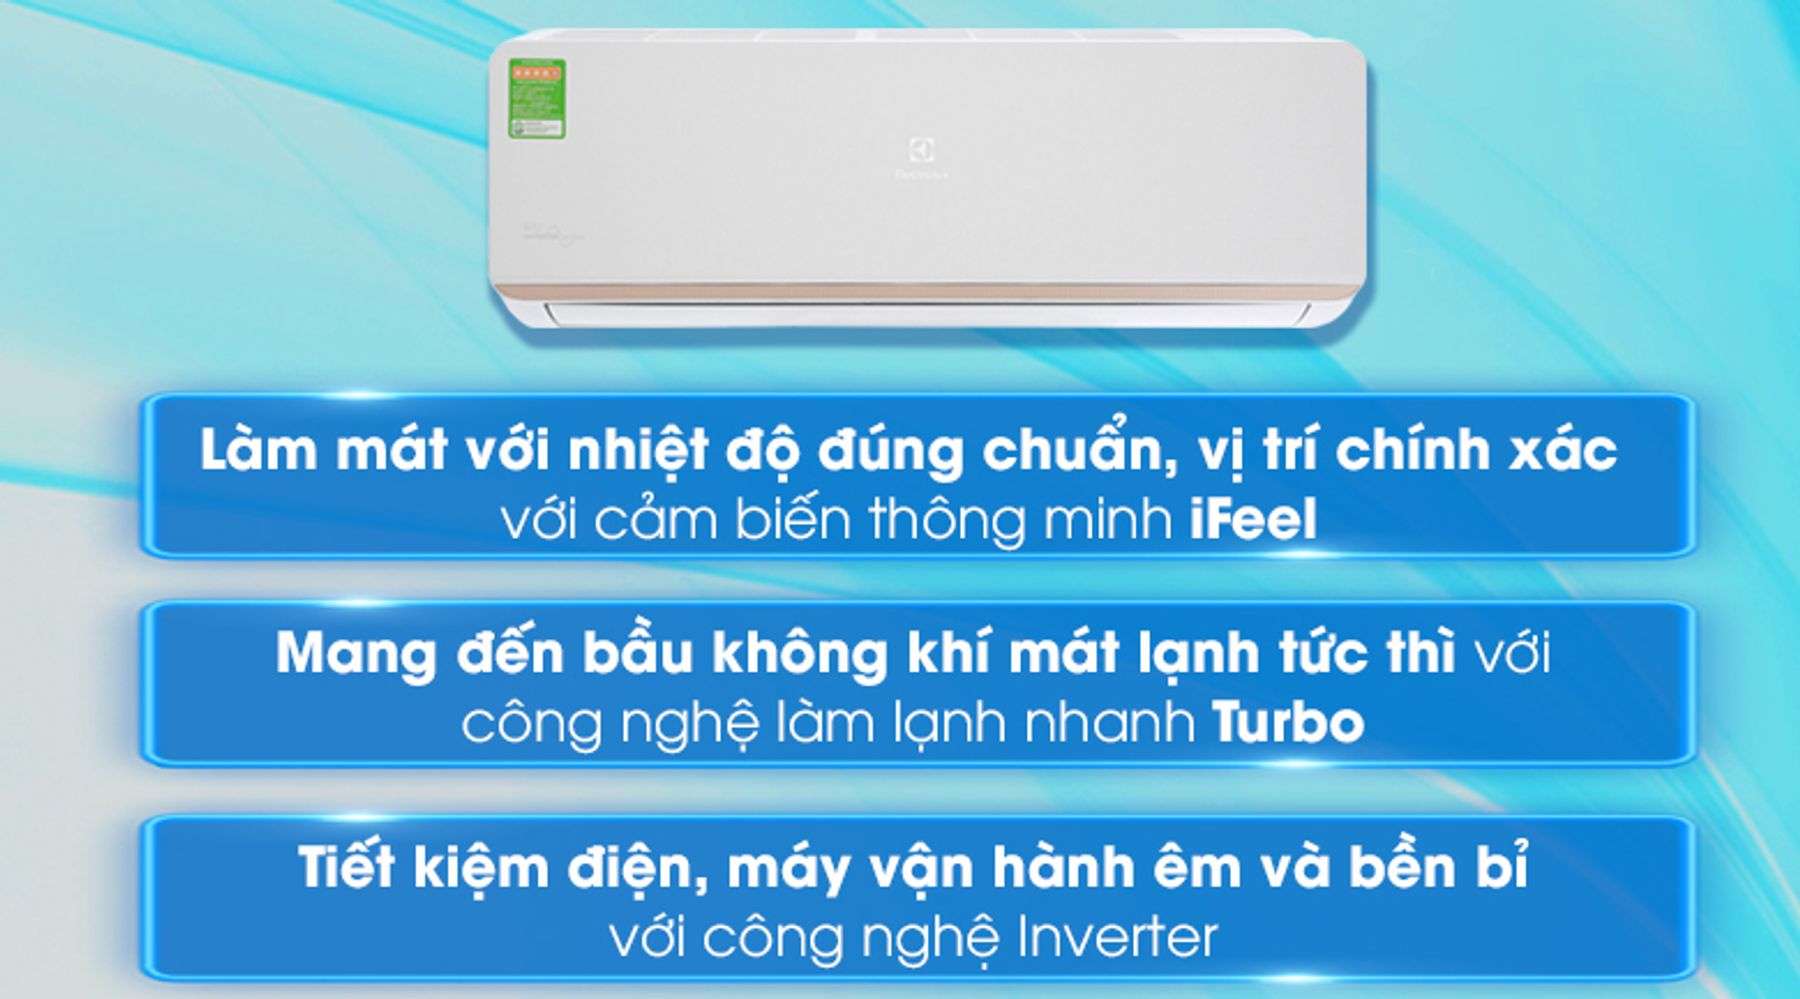 Máy lạnh Electrolux Inverter 1 HP tiết kiệm điện